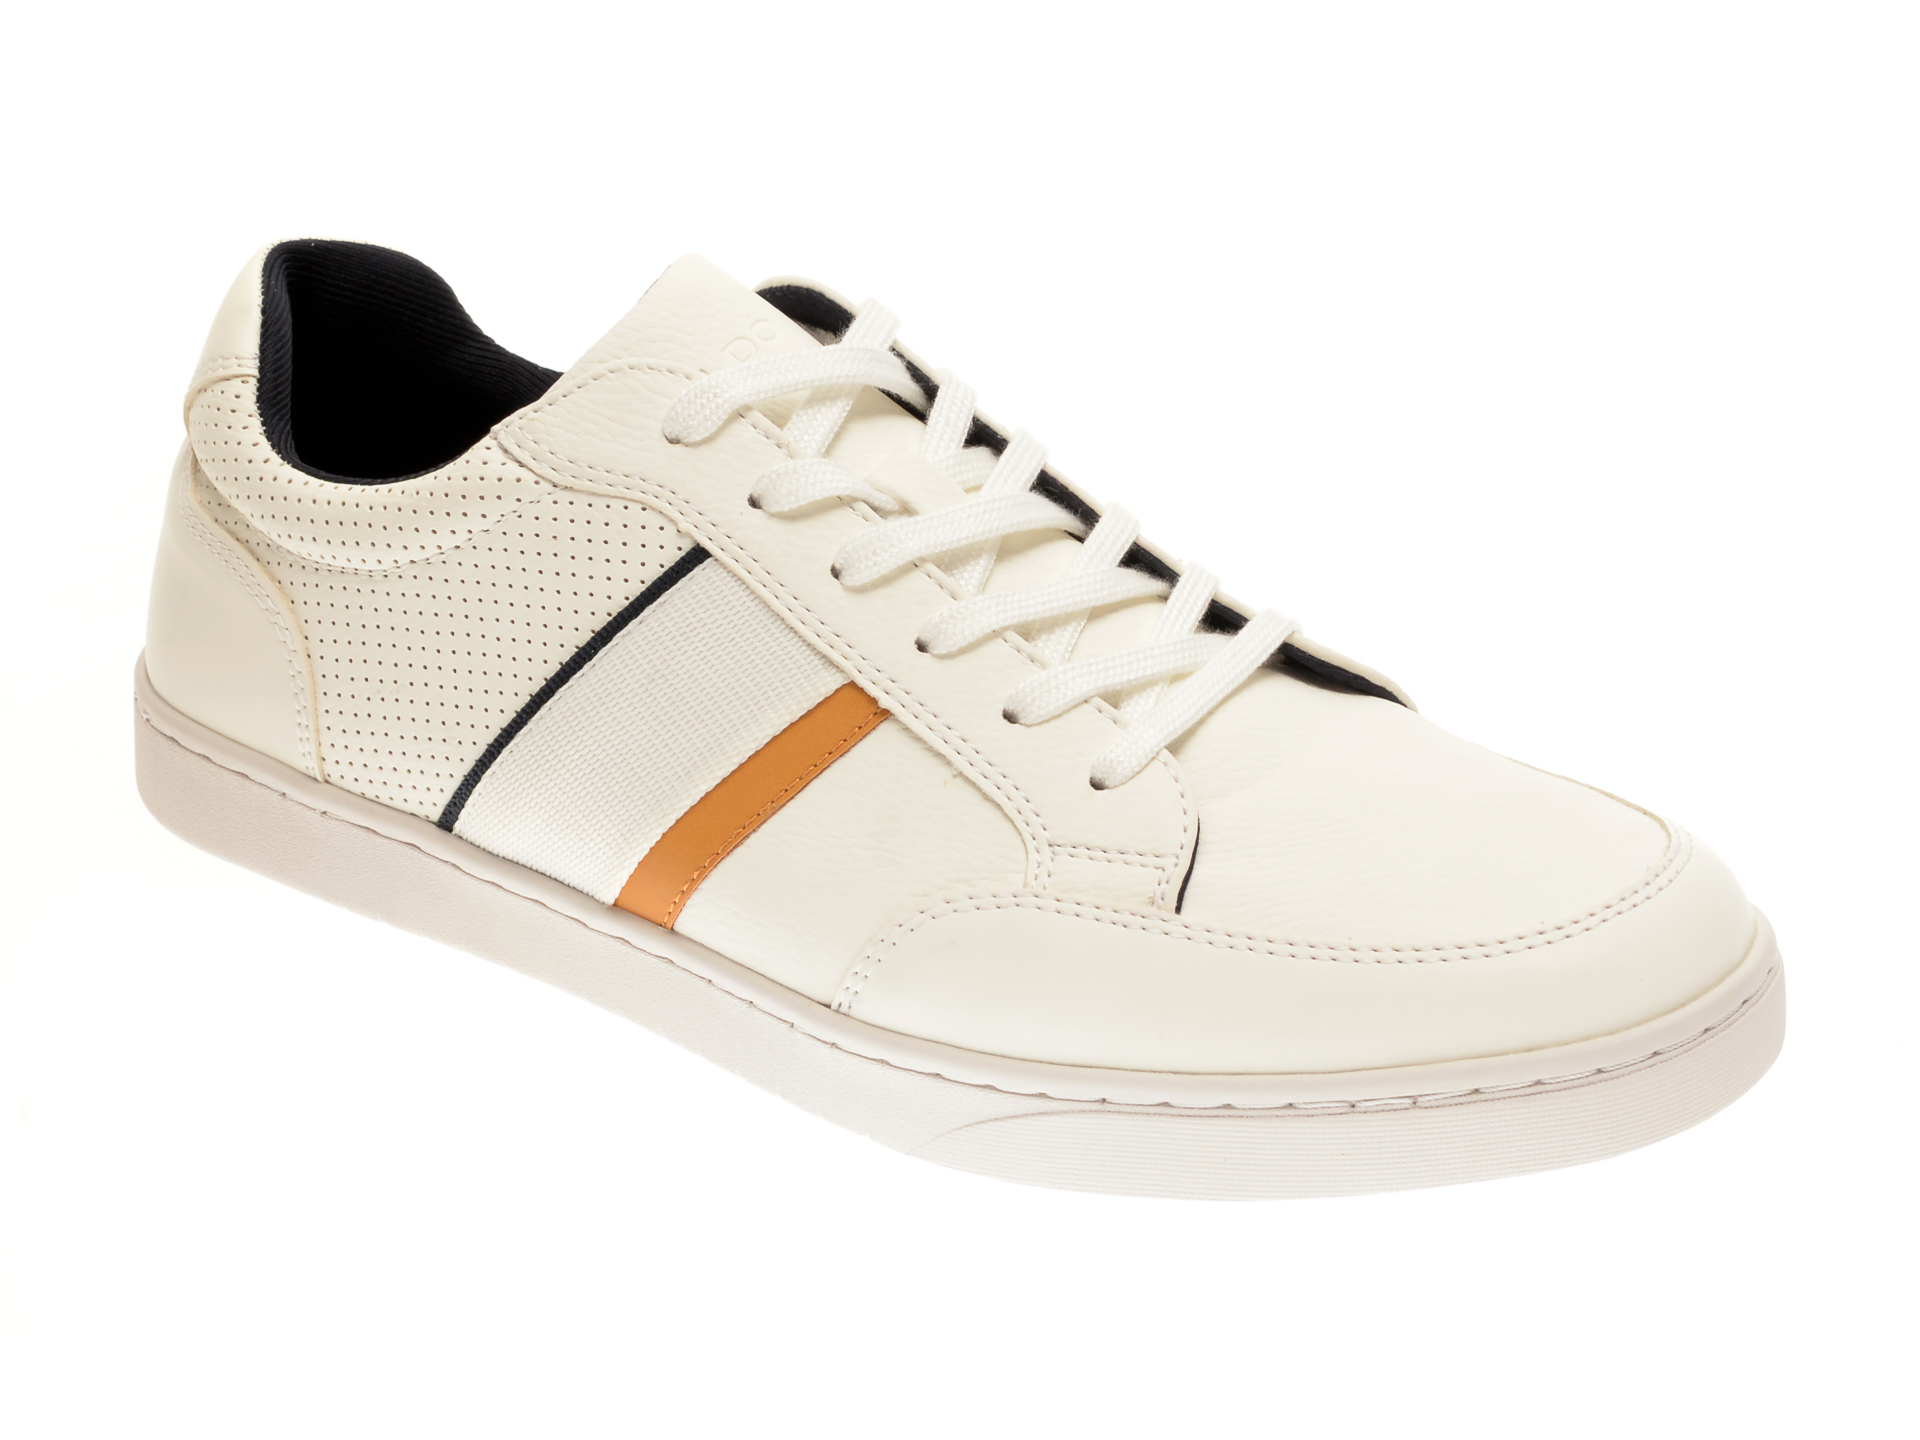 Pantofi albi, Assimilis100, din piele ecologica ALDO imagine 2022